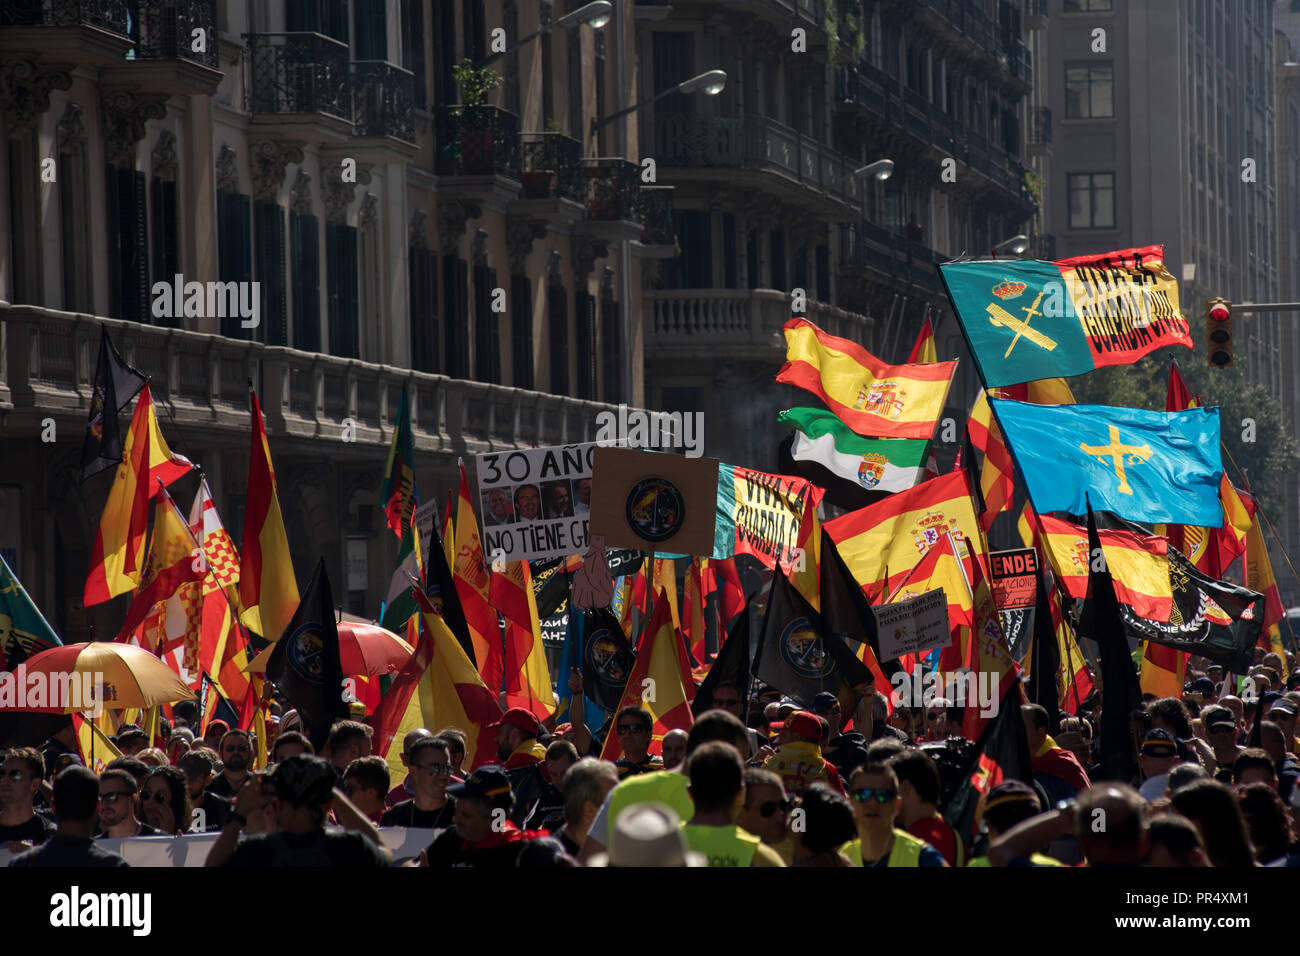 September 29, 2018 - Barcelona, Katalonien, Spanien - Mitglieder und Anhänger der spanischen Polizei Guardia Civil und die Policia Nacional durch Barcelonas Straßen anspruchsvollen Gehalt Verbesserungen und in Hommage an die Teilnahme gegen die Katalanische Referendum für die Unabhängigkeit vor einem Jahr marschierten. Stockfoto